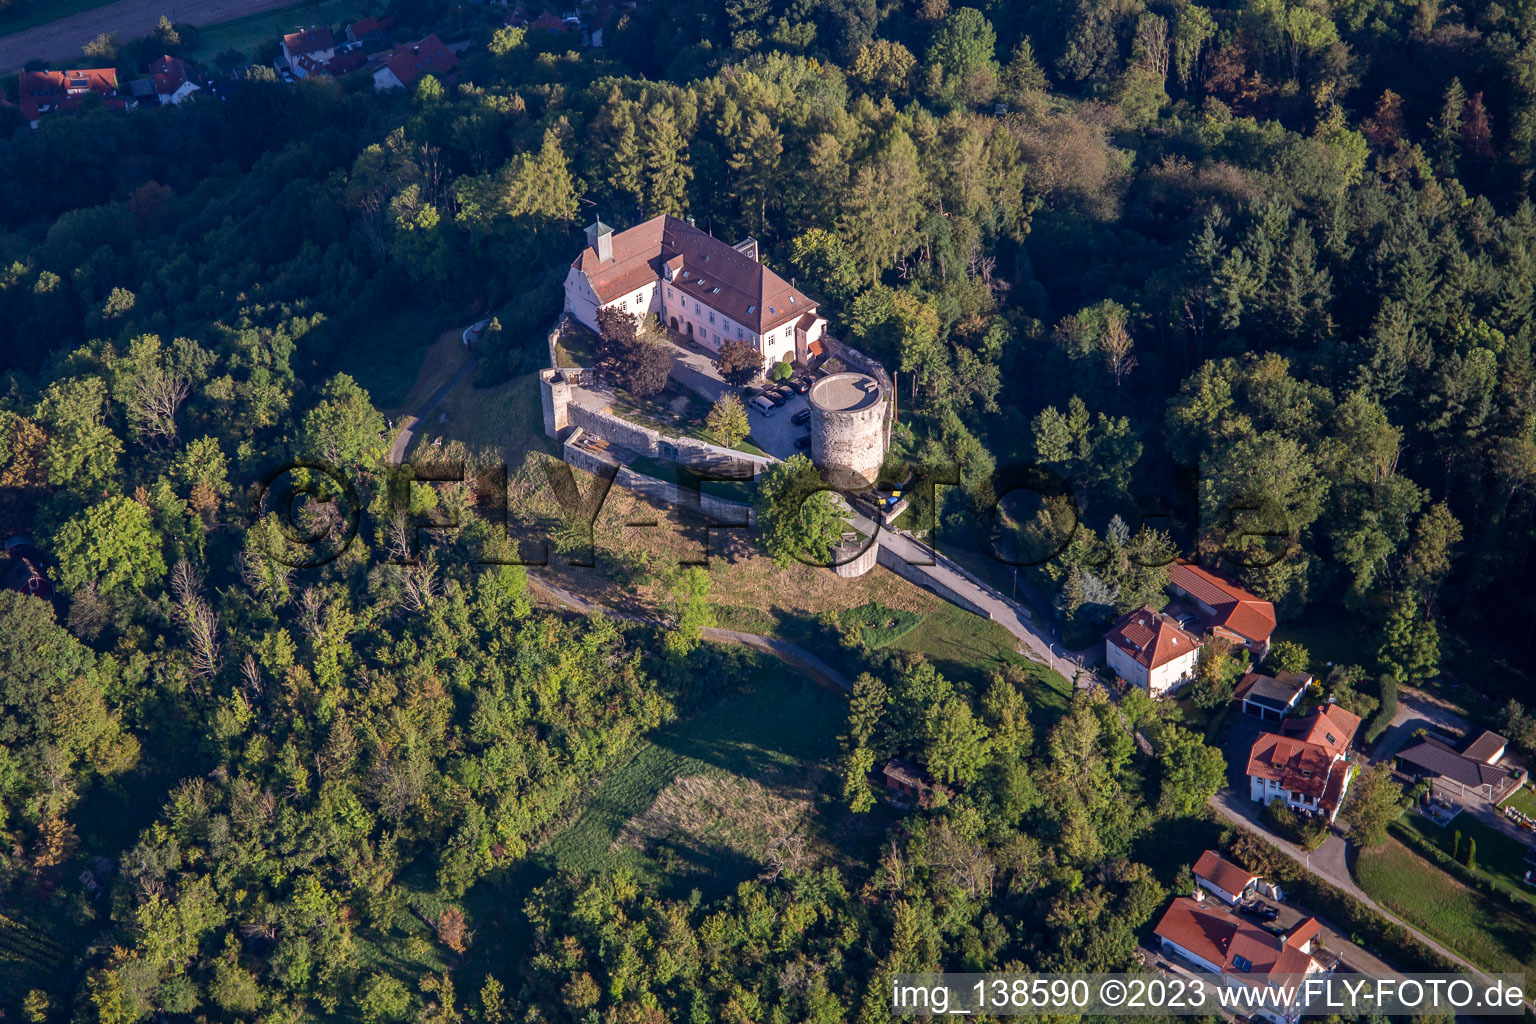 Photographie aérienne de Château d'Ebersberg à le quartier Lippoldsweiler in Auenwald dans le département Bade-Wurtemberg, Allemagne